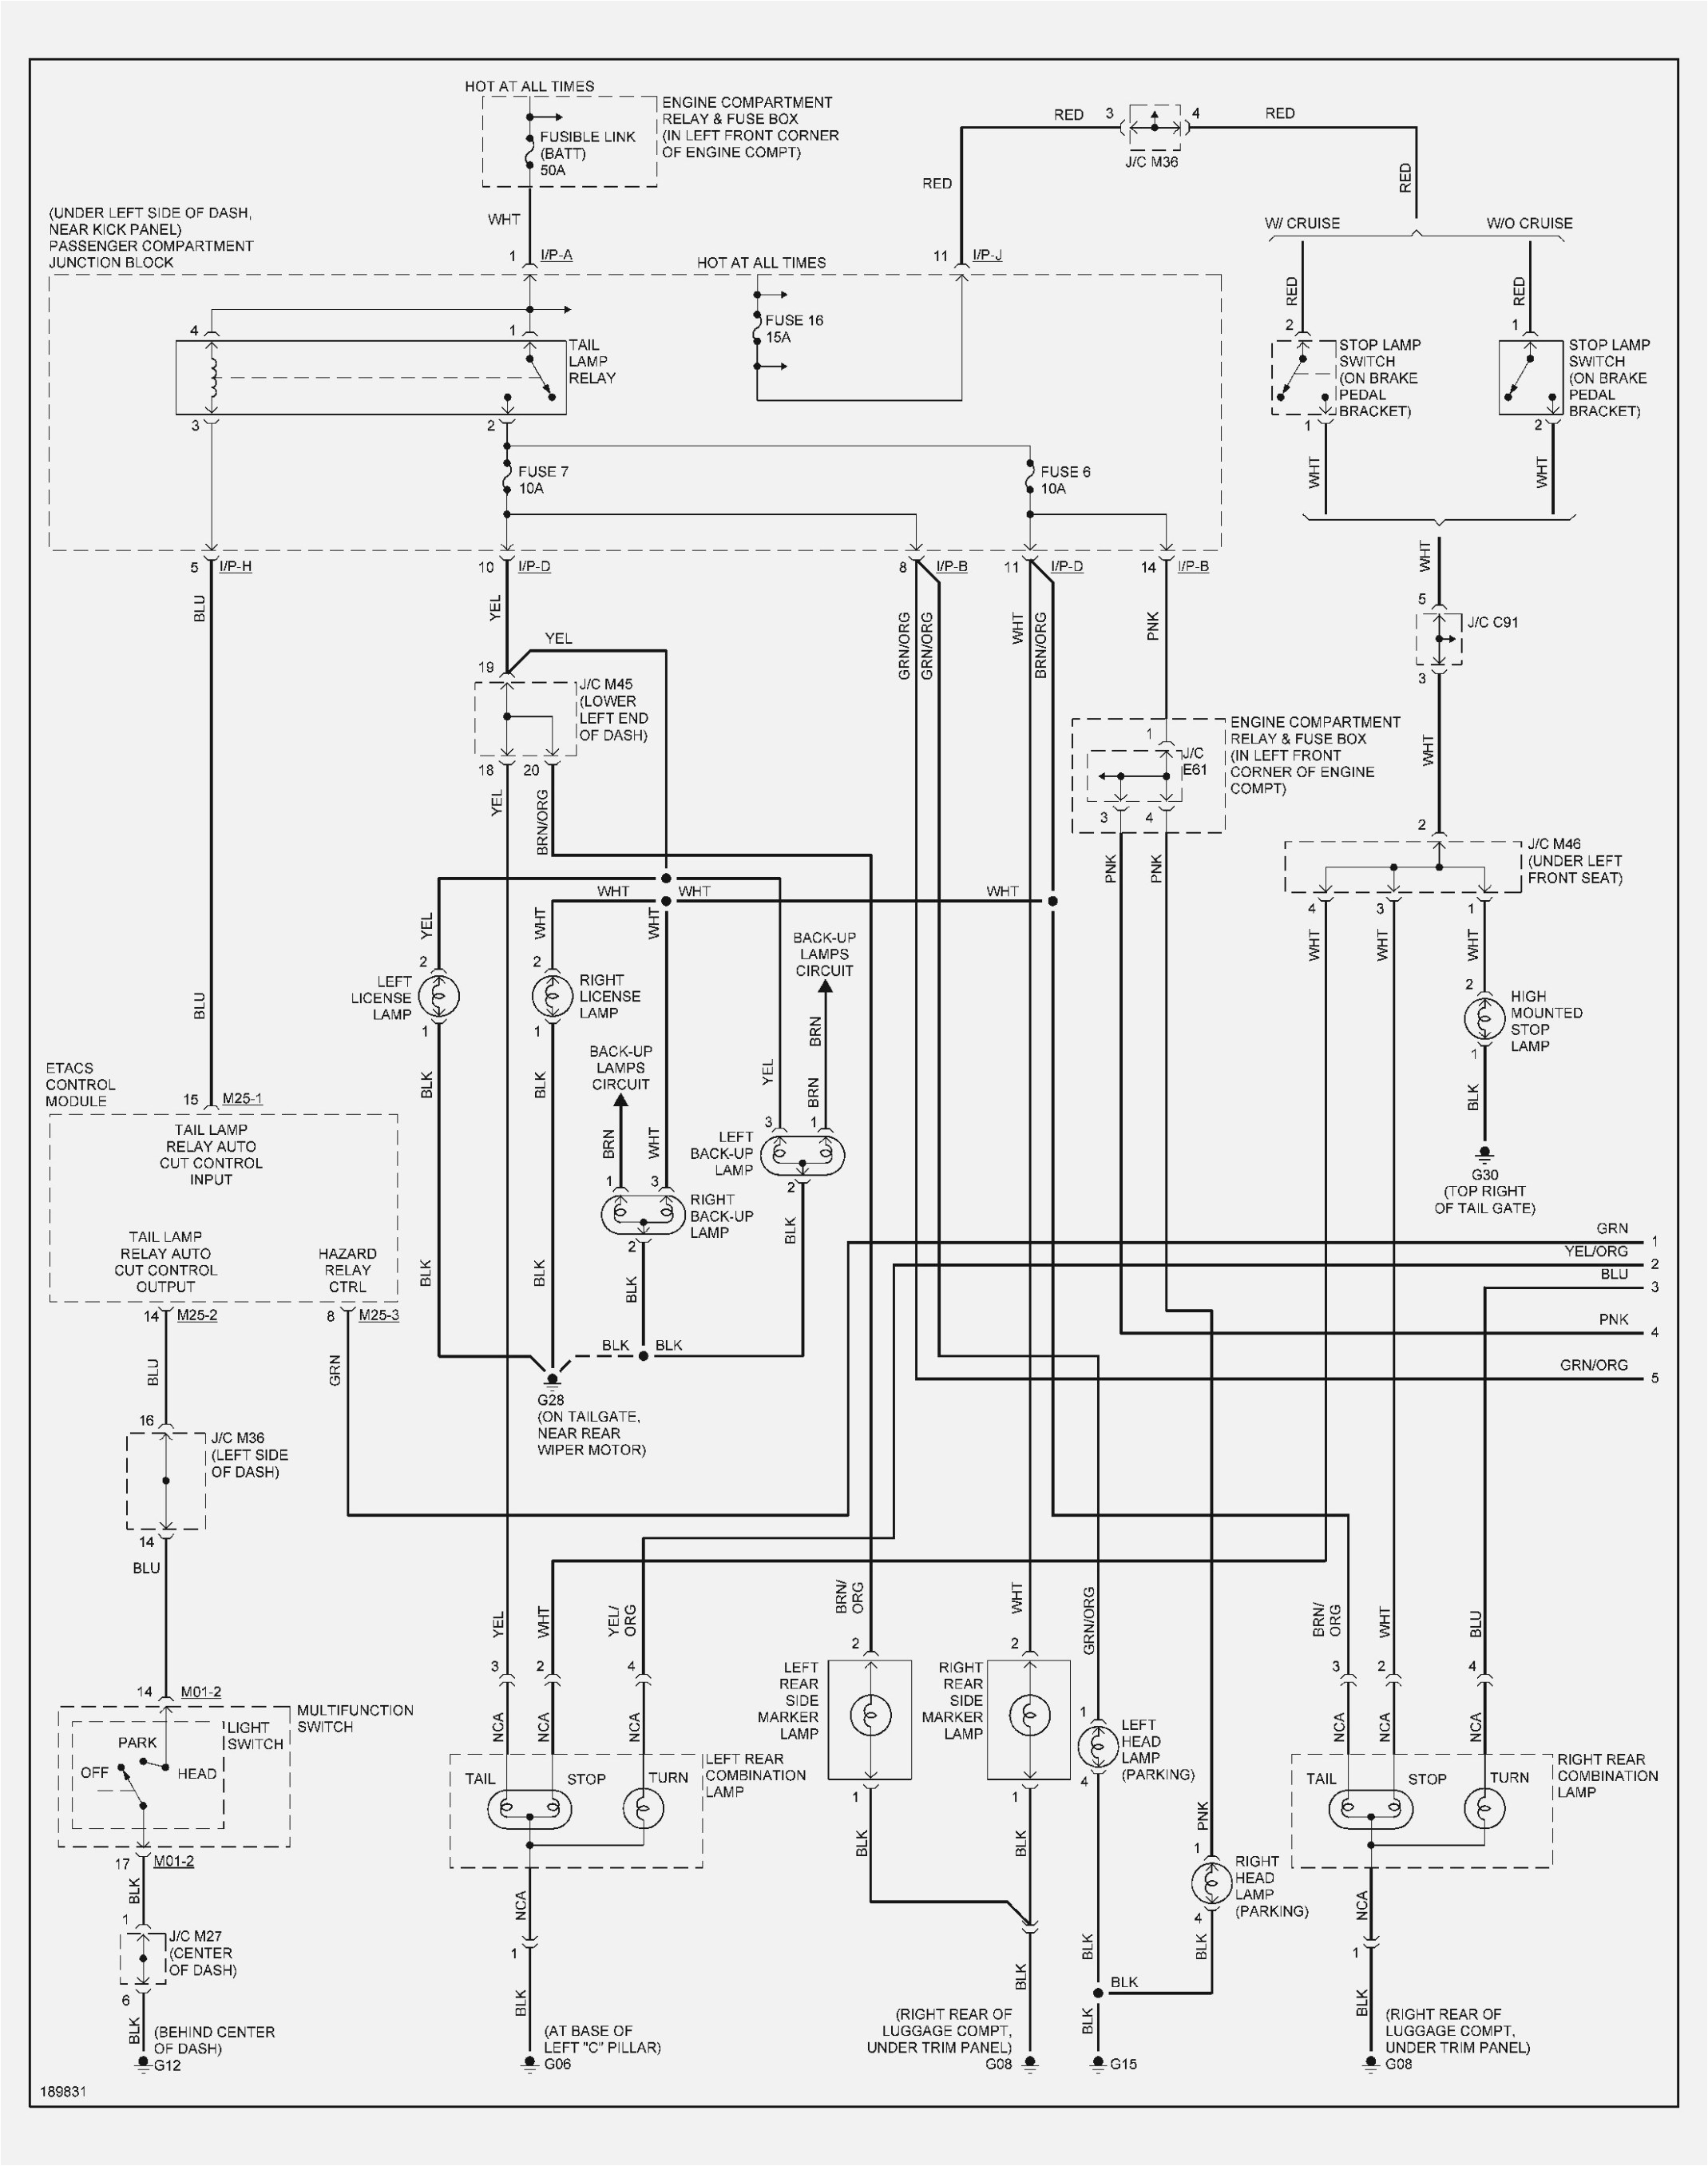 hyundai wiring diagram wiring diagram blog 1992 hyundai wiring diagram